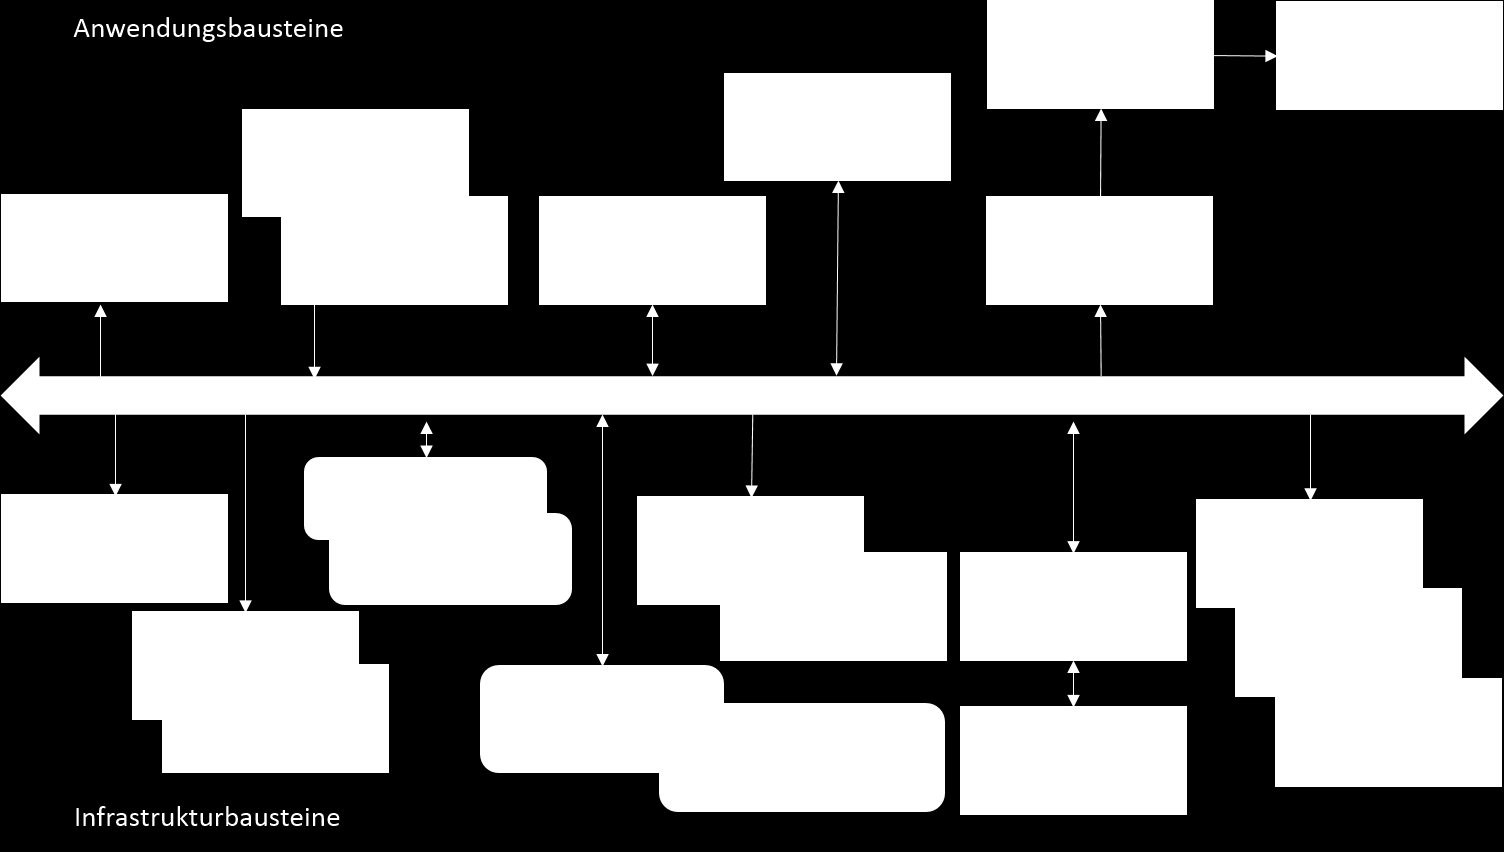 5.10 ZUSAMMENGEFASSTE ARCHITEKTUR 06.02.2015 Wenn man die Übersicht aus Abbildung 7 und Abbildung 8 zusammenführt, so erhält man eine vereinfachte Architektur wie in der Abbildung 9 zu sehen ist.